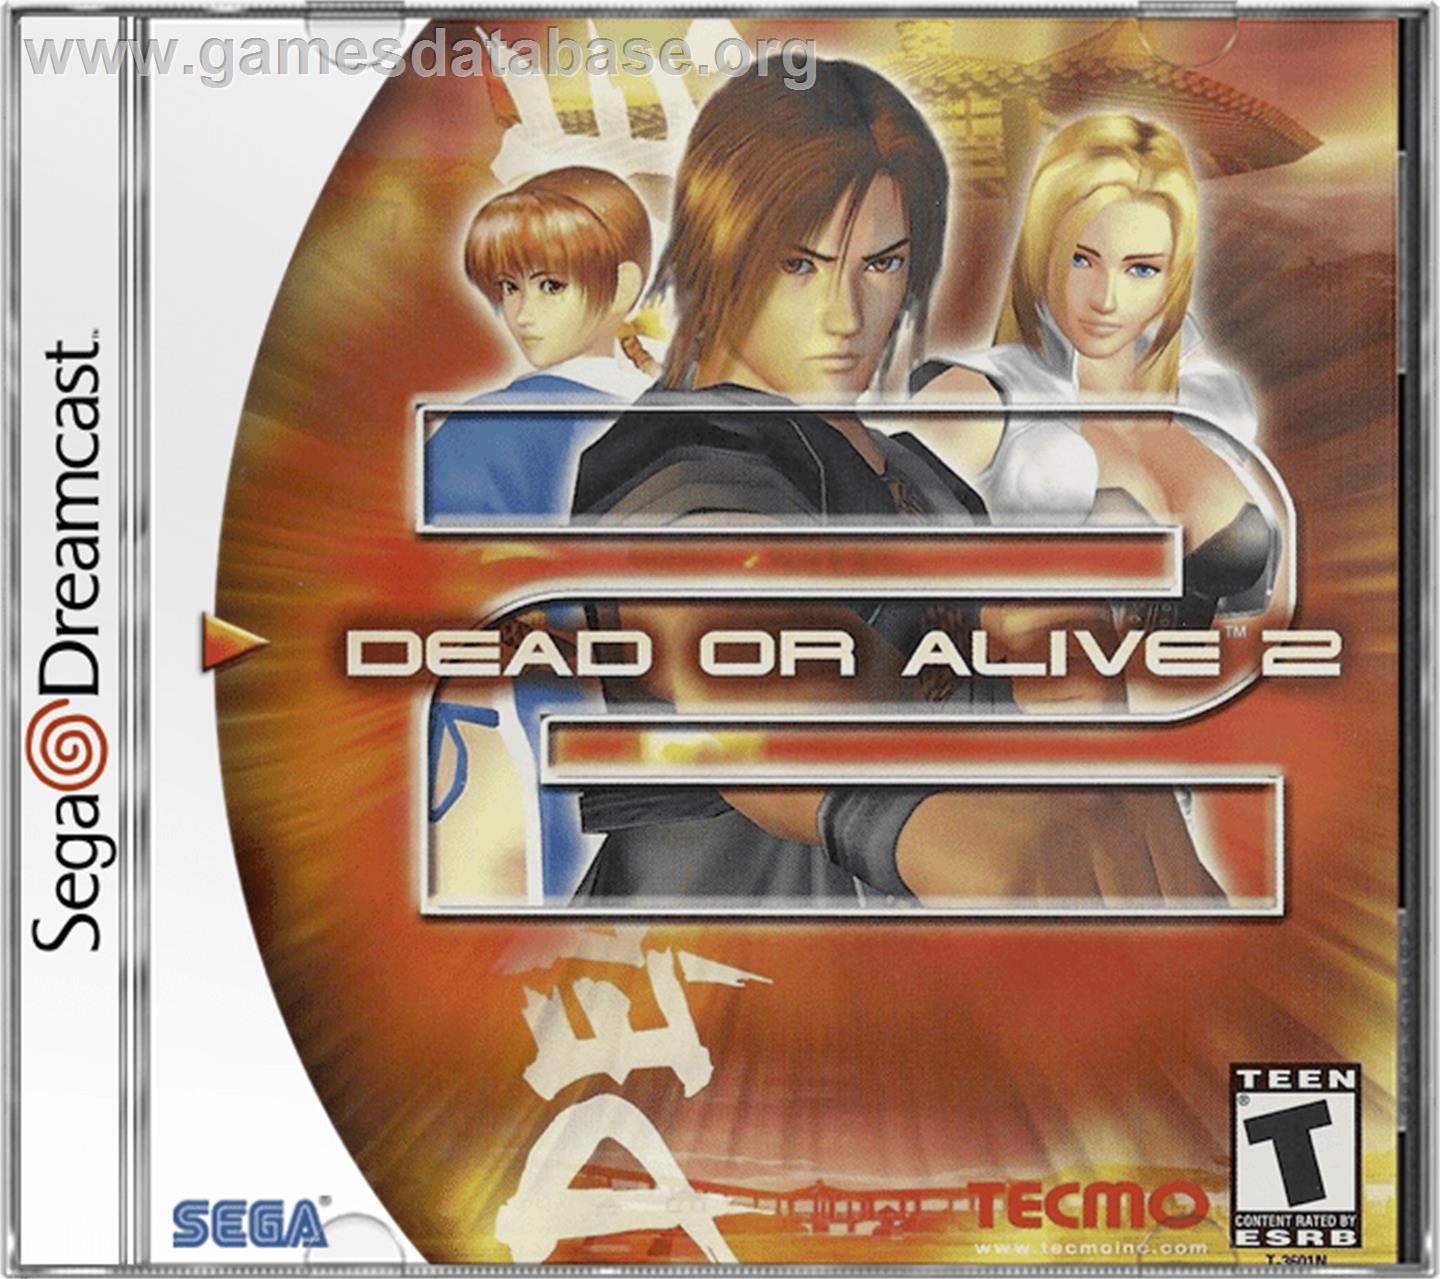 Dead or Alive 2 - Sega Dreamcast - Artwork - Box